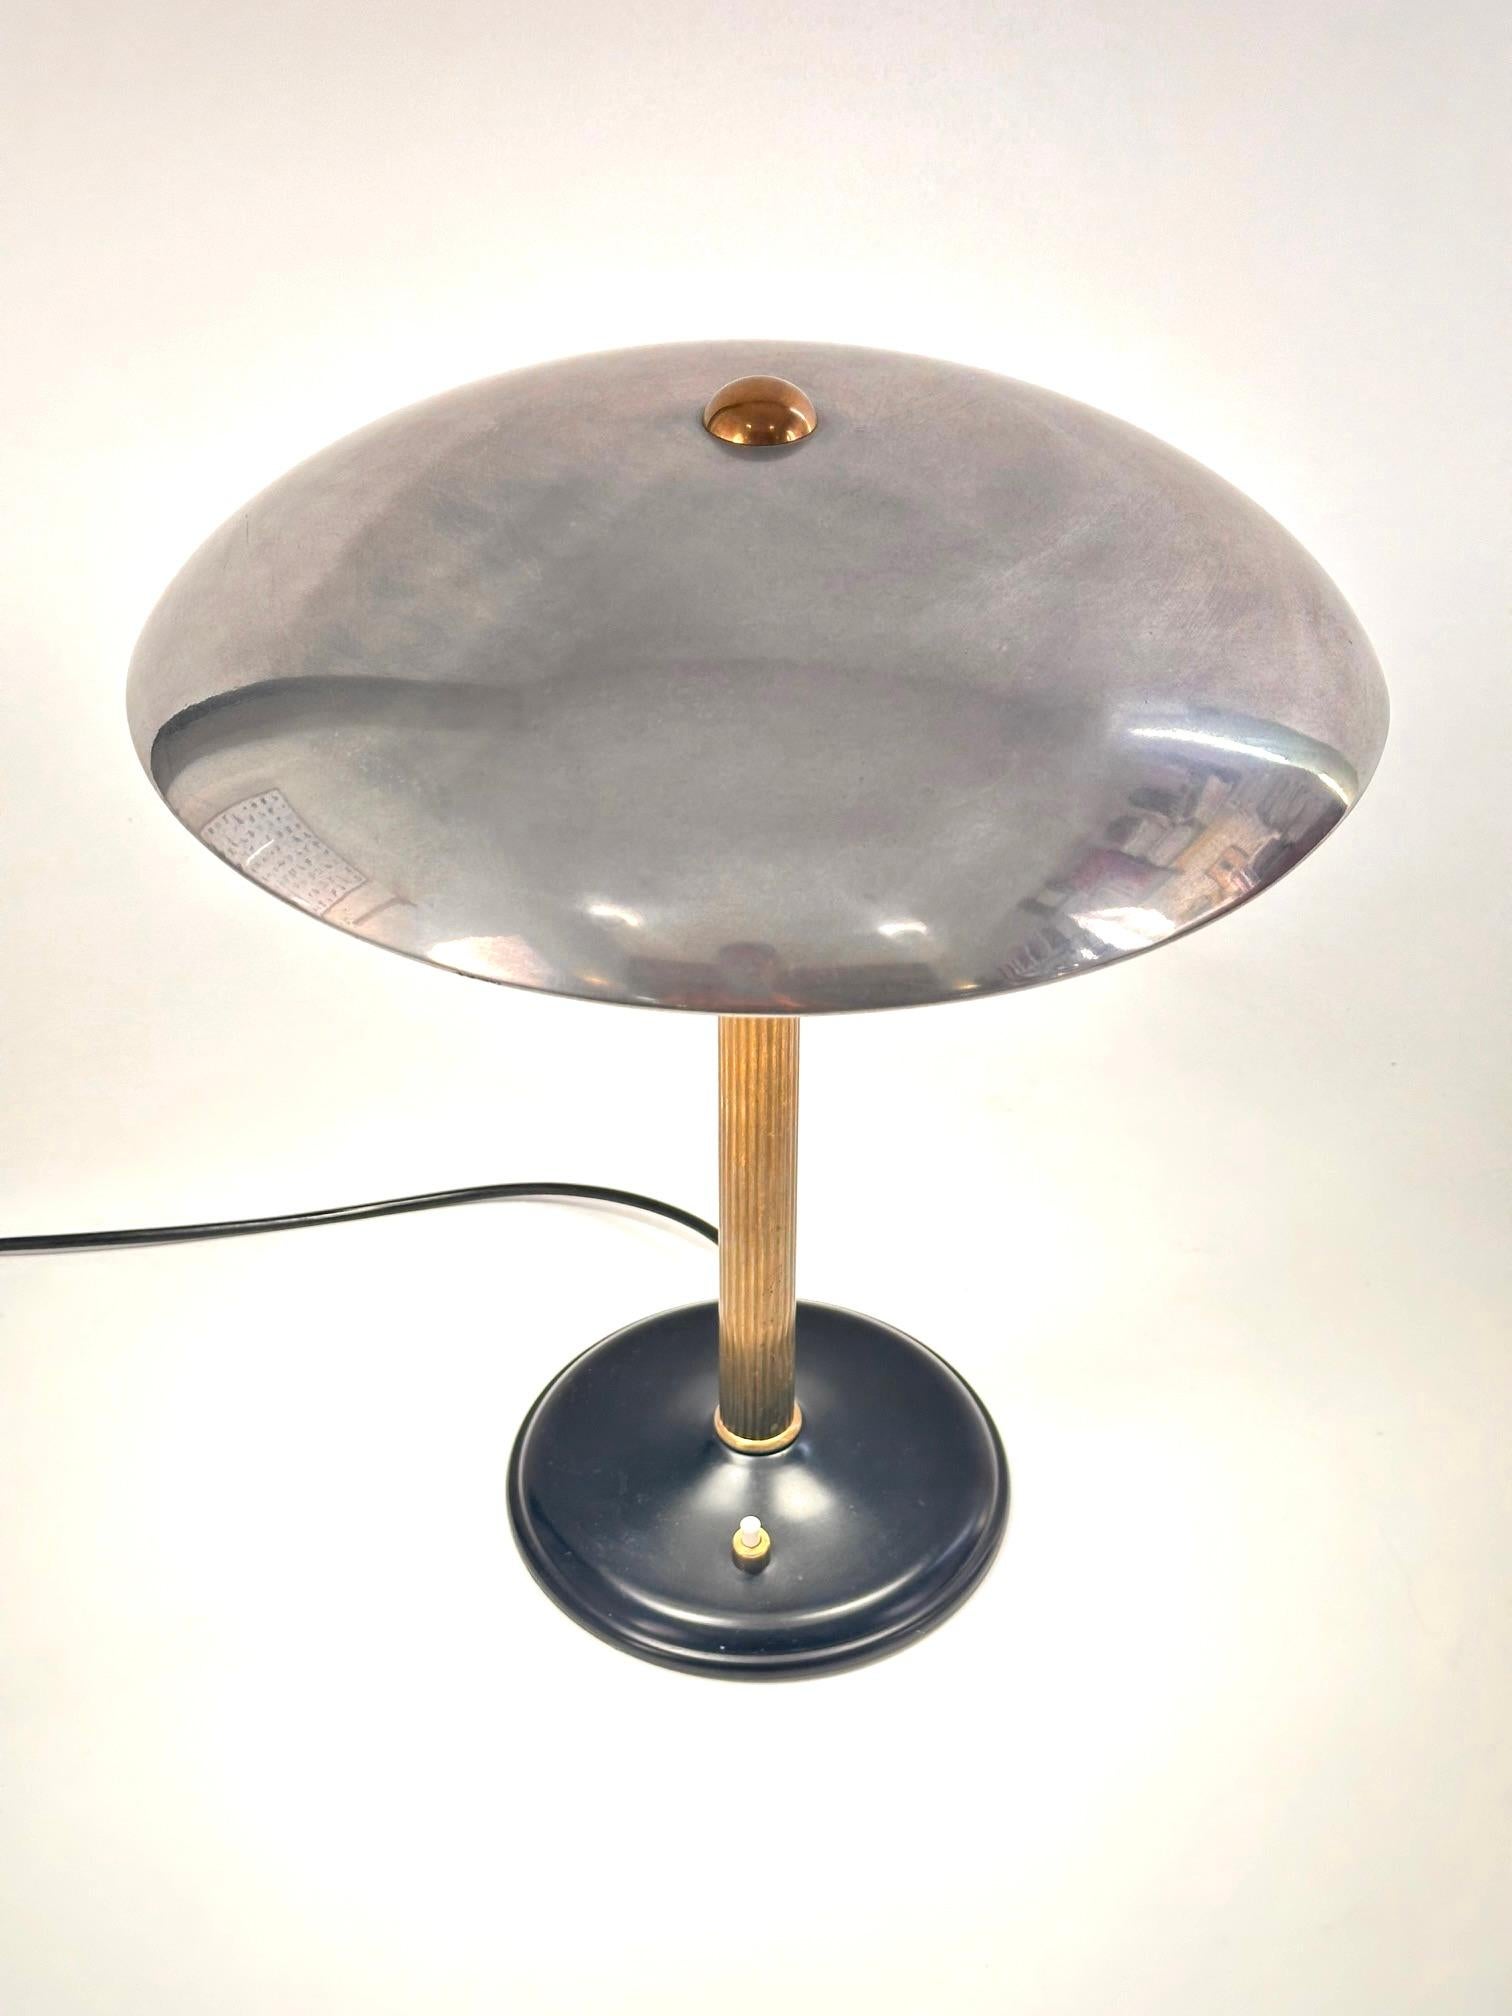 Lampe de table italienne du milieu du siècle dernier.Structure en métal, tige chromée et base en émail noir.Excellent état.Livraison gratuite.